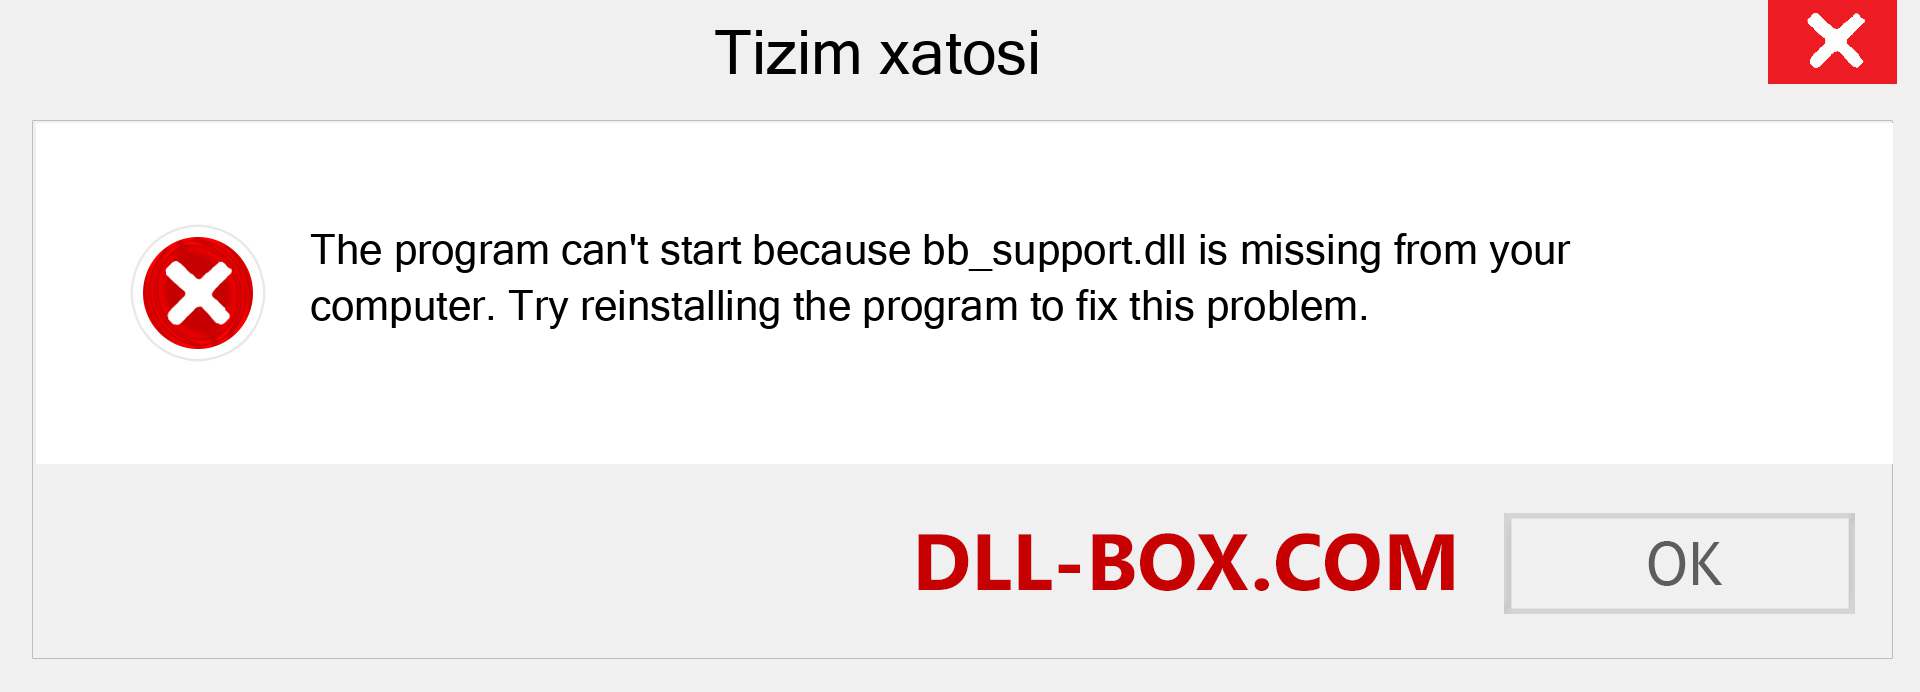 bb_support.dll fayli yo'qolganmi?. Windows 7, 8, 10 uchun yuklab olish - Windowsda bb_support dll etishmayotgan xatoni tuzating, rasmlar, rasmlar